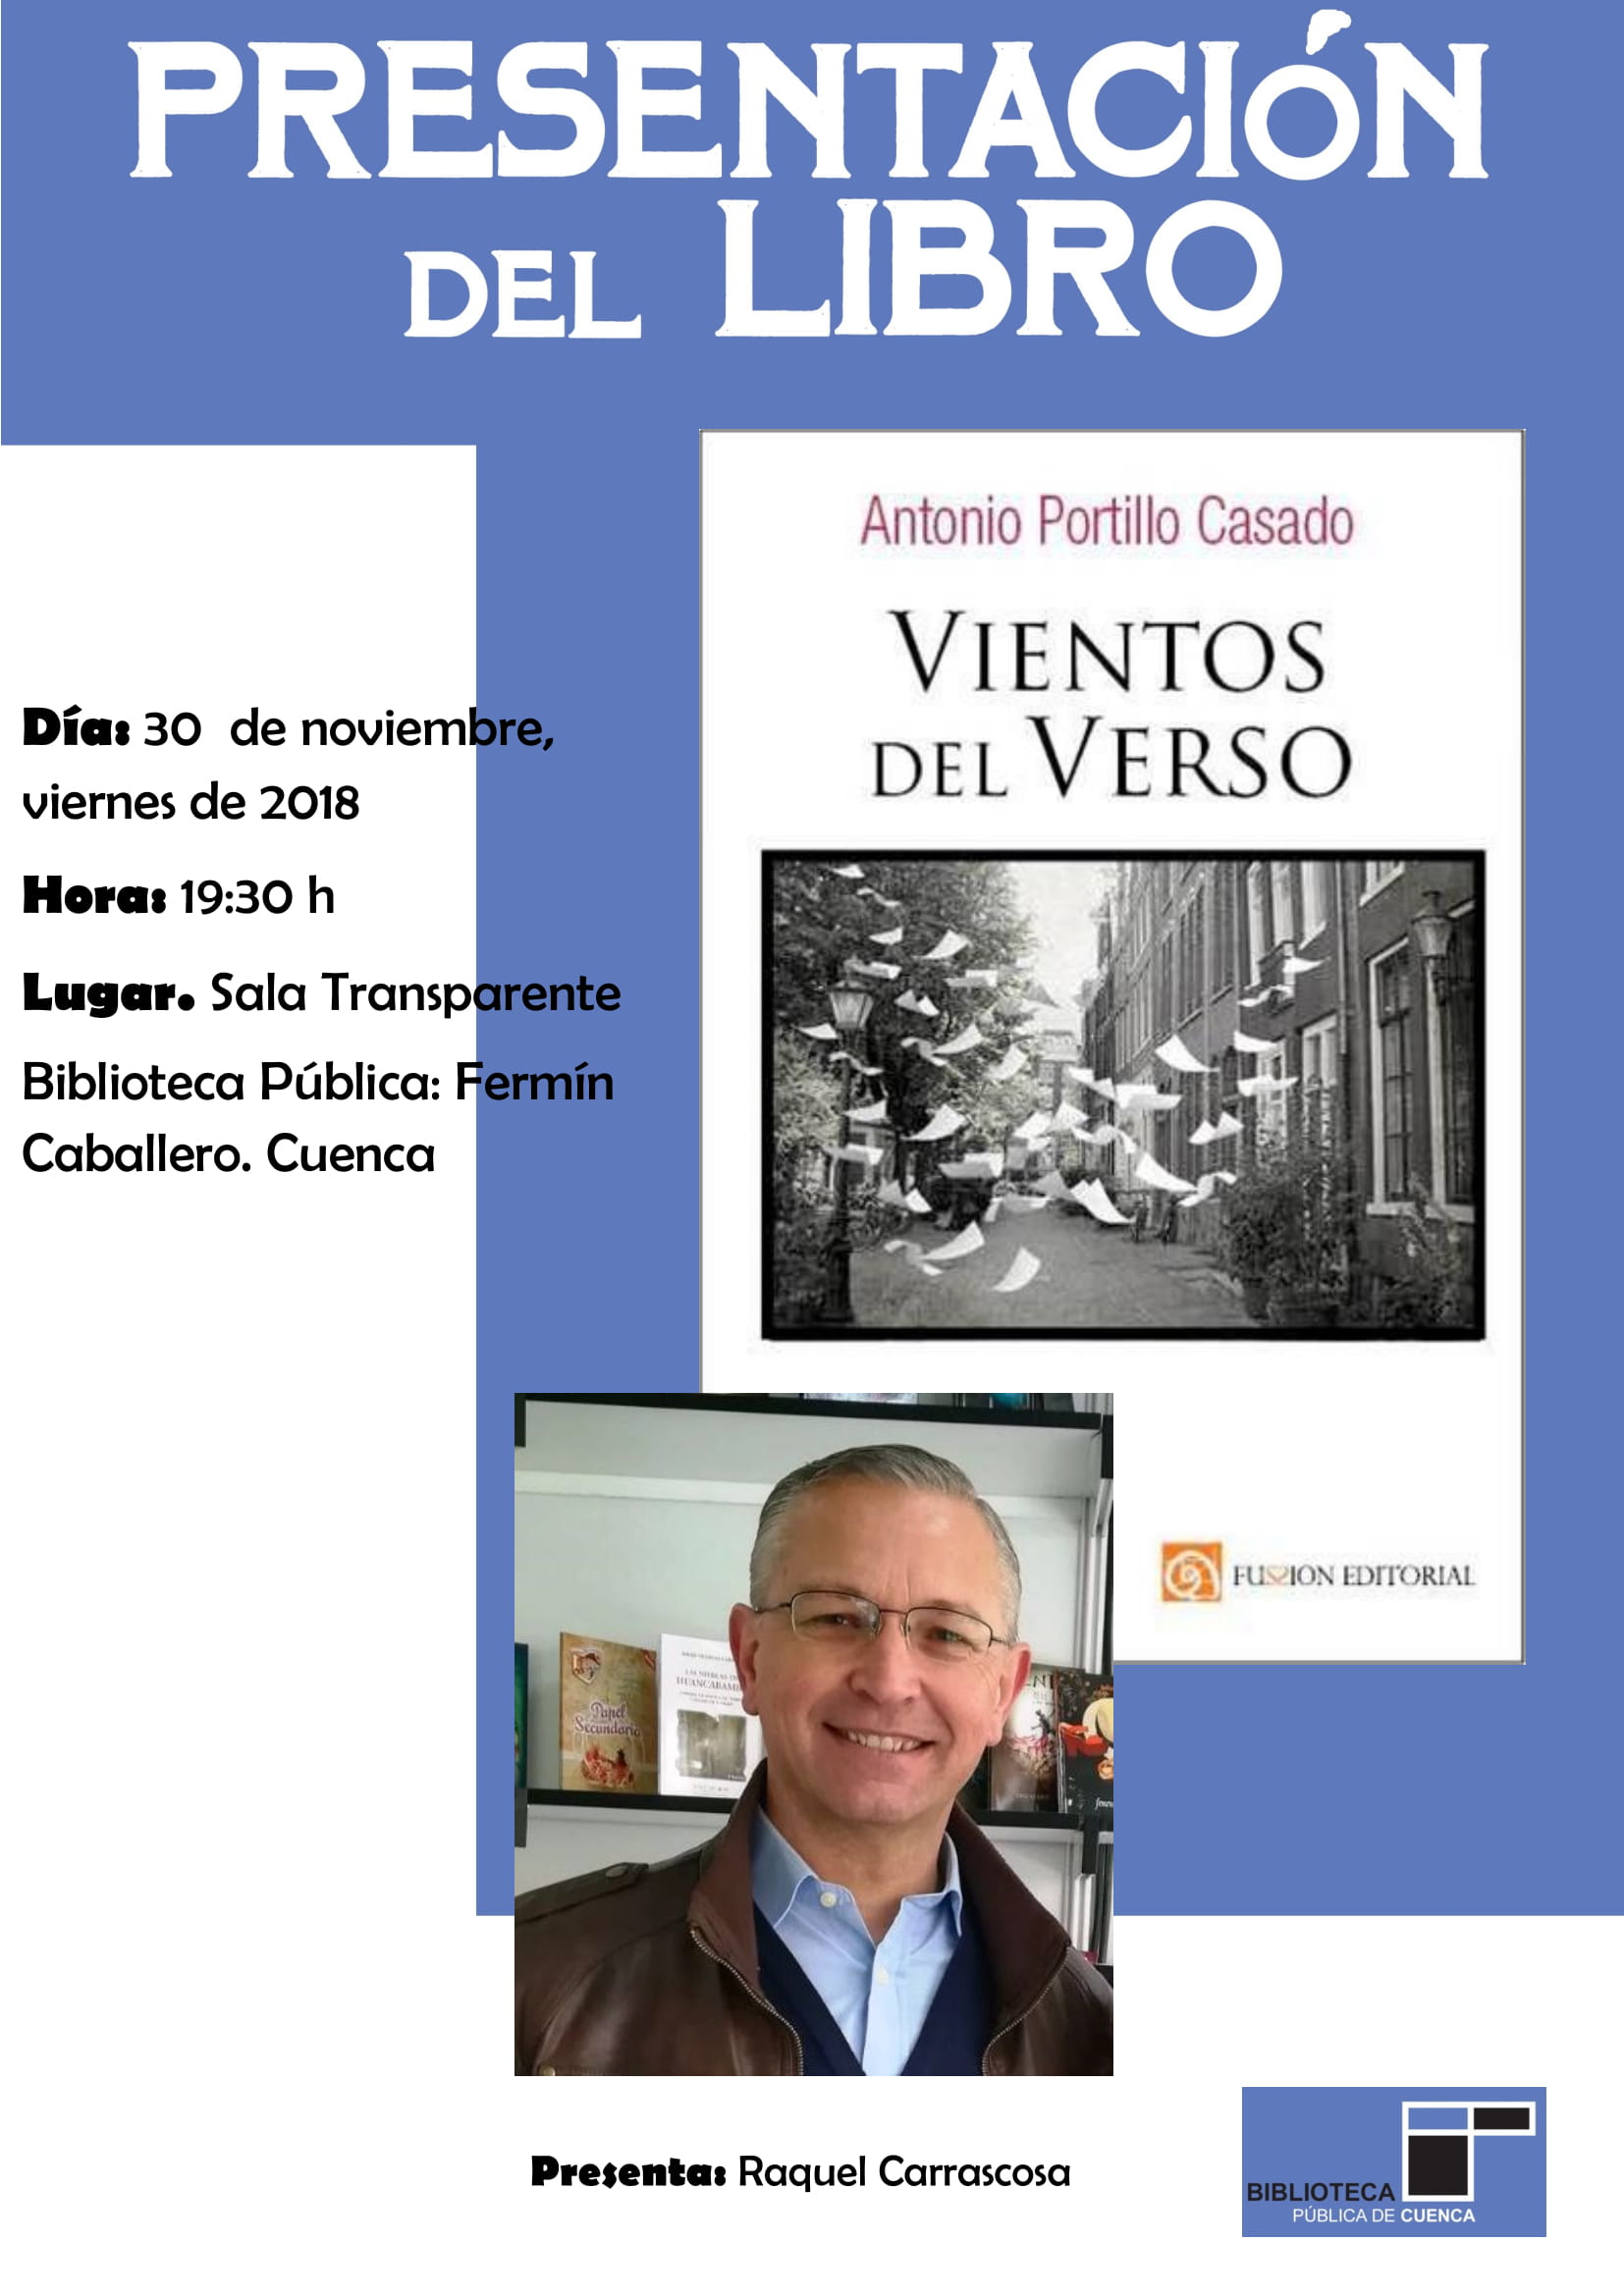 Presentación del poemario “Vientos de Verso” en la Biblioteca Pública Fermín Caballero (Cuenca, 30 de nov. – 19:30 h.)